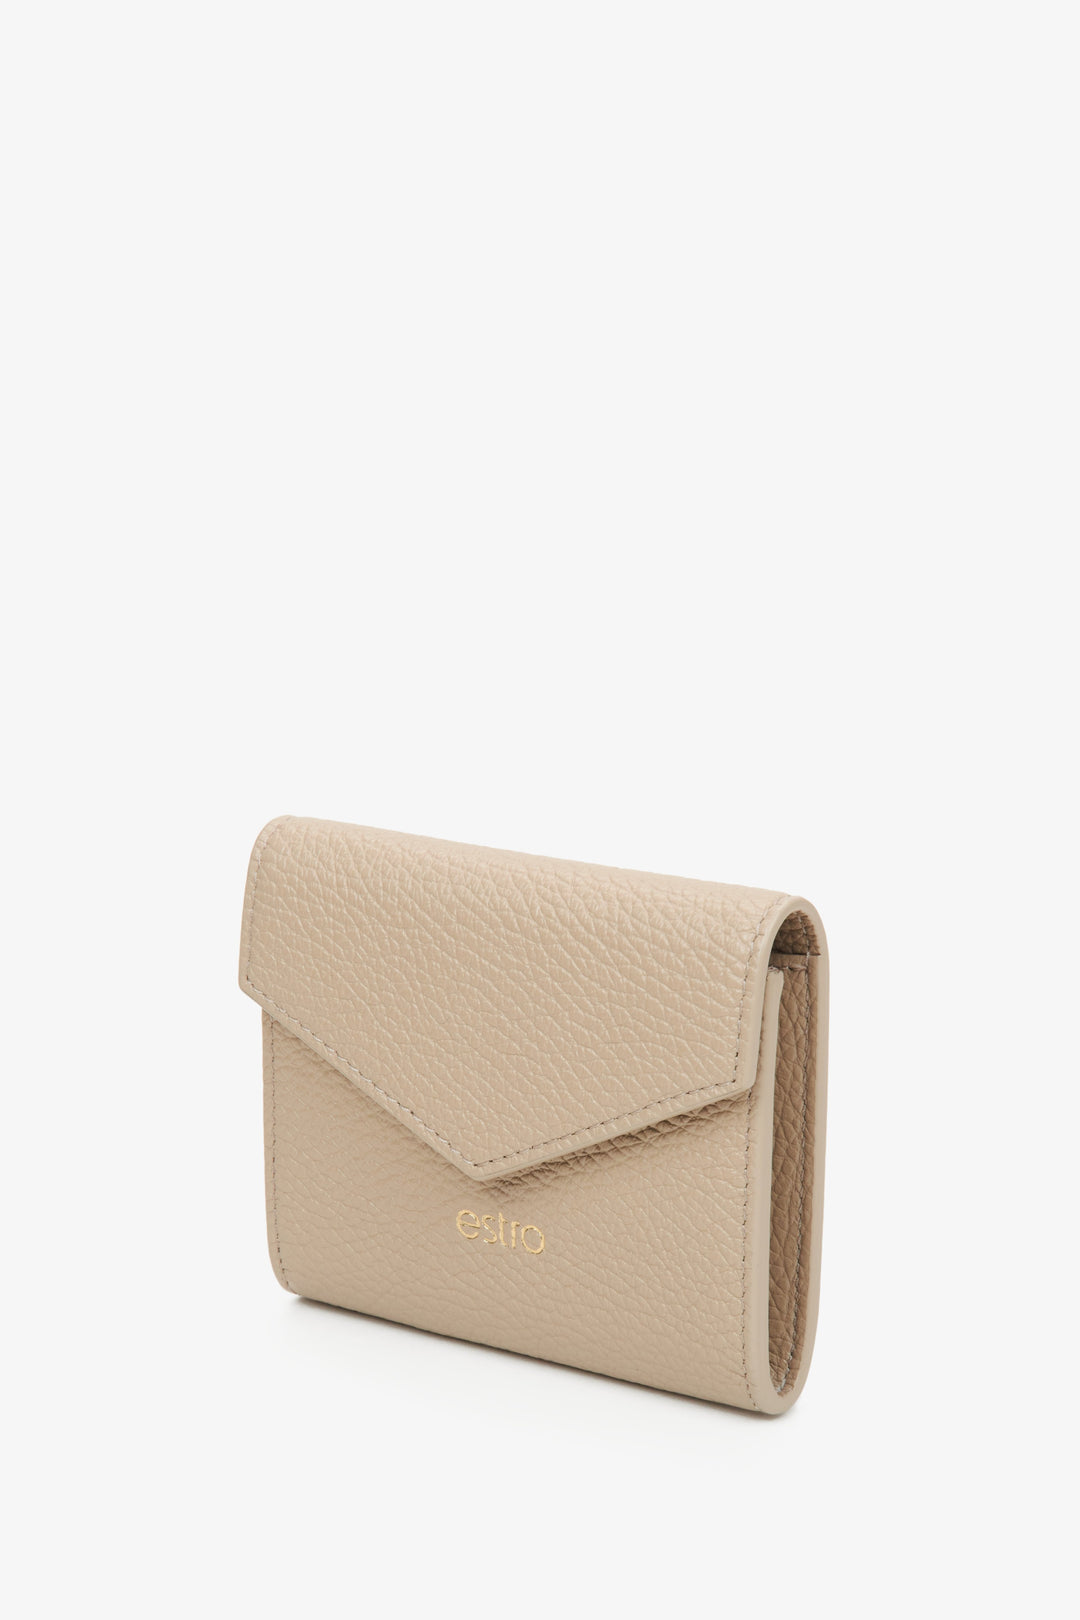 Estro beige leather women's wallet.